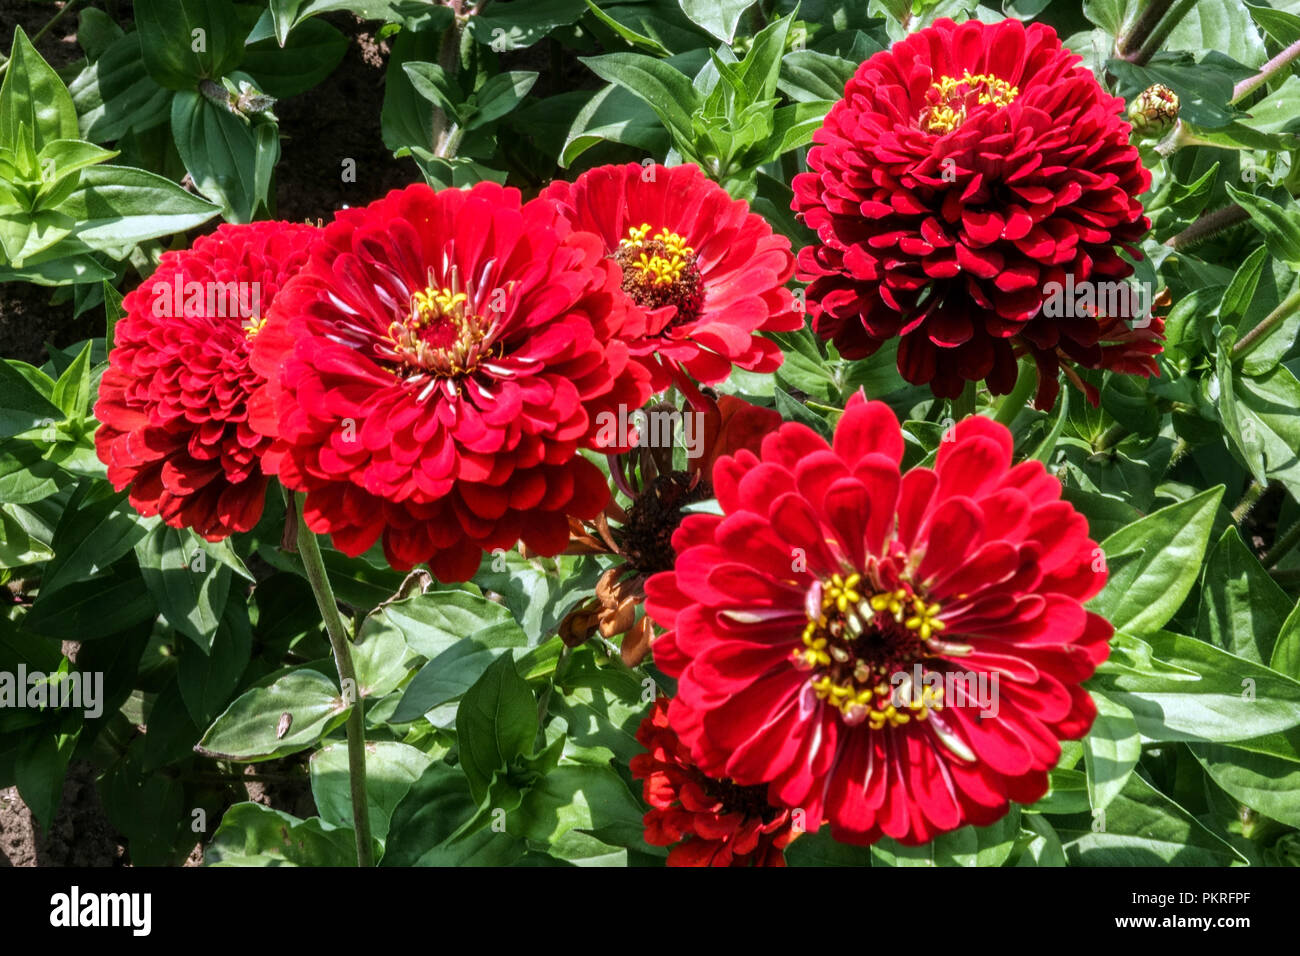 Fleurs rouges Zinnias Zinnia 'Scarlet Flame', lit de fleurs zinnias dans le jardin Banque D'Images